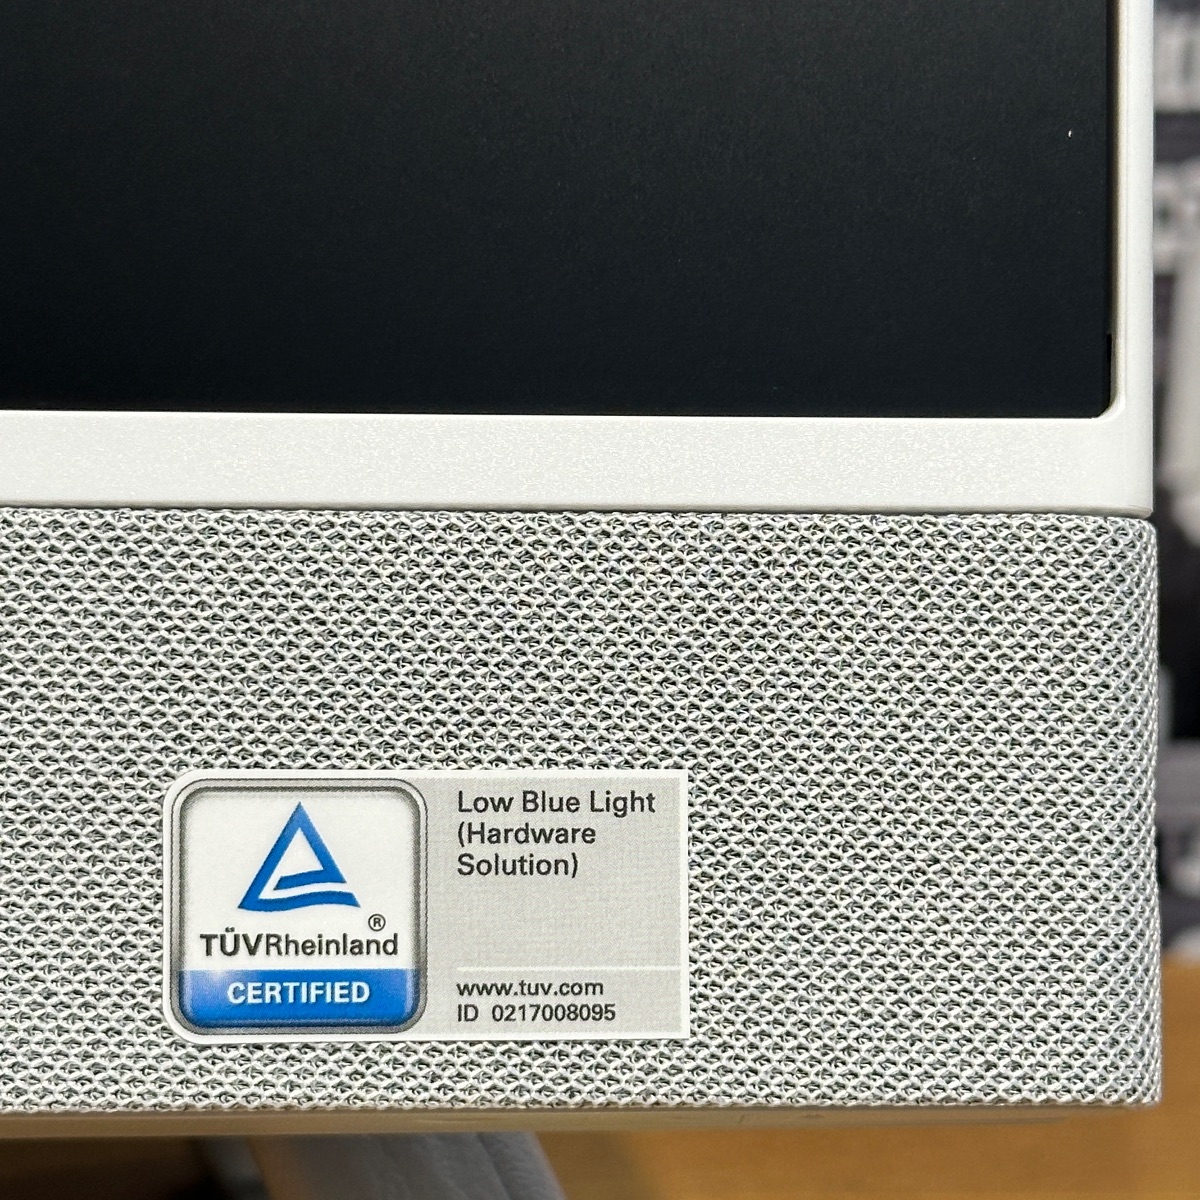 Dell Inspiron All in One AIO 24 Computer i5 8GB 512GB SSD Windows 11 Webcam WiFi DELL INSPIRON 24  (Brand New)